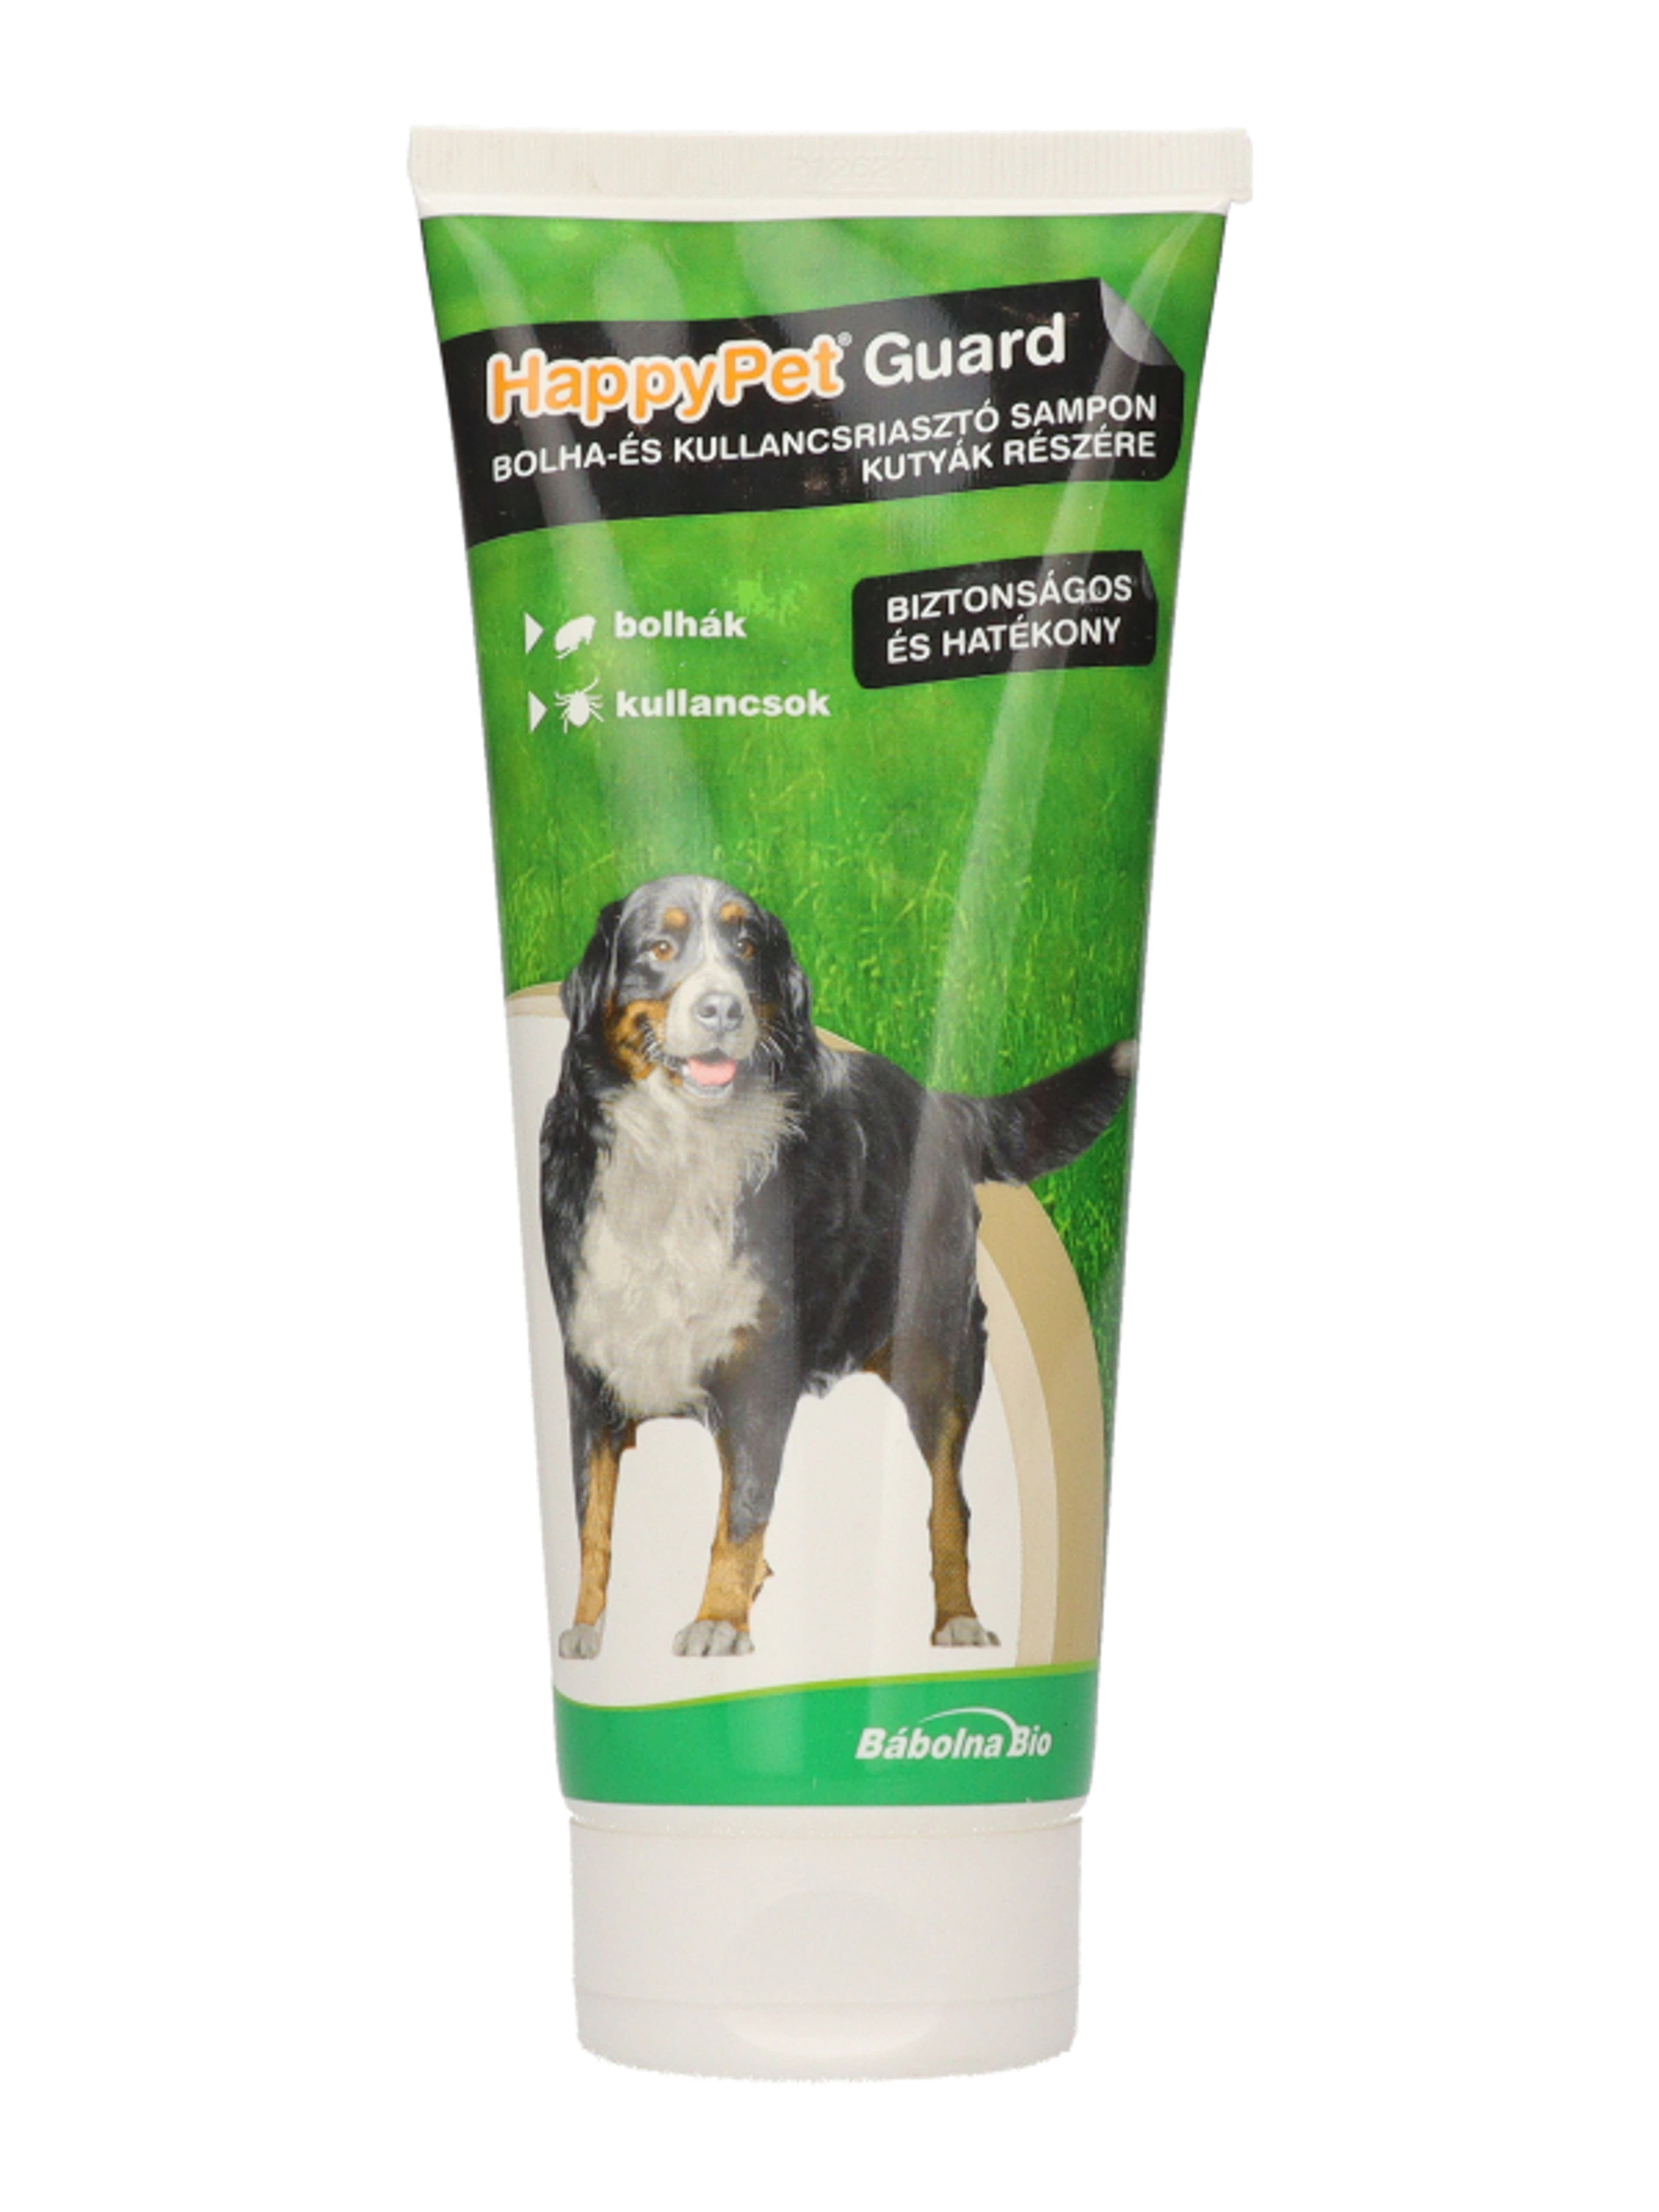 Happy Pet Guard bolha és kulancs sampon kutyáknak - 200 ml-2